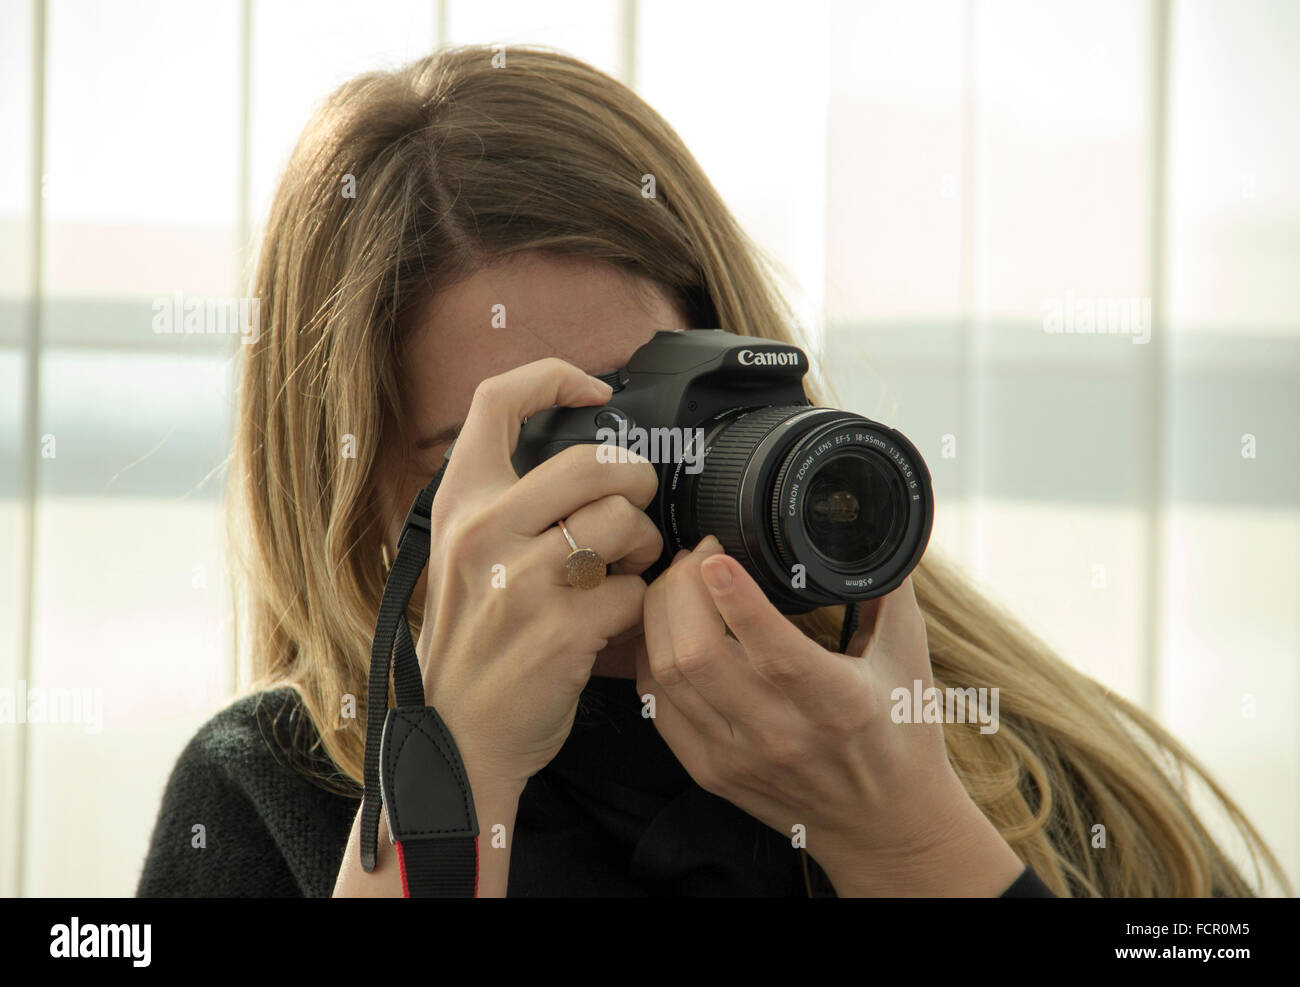 Jeune femme photographe à l'aide d'un appareil photo reflex numérique Canon Banque D'Images